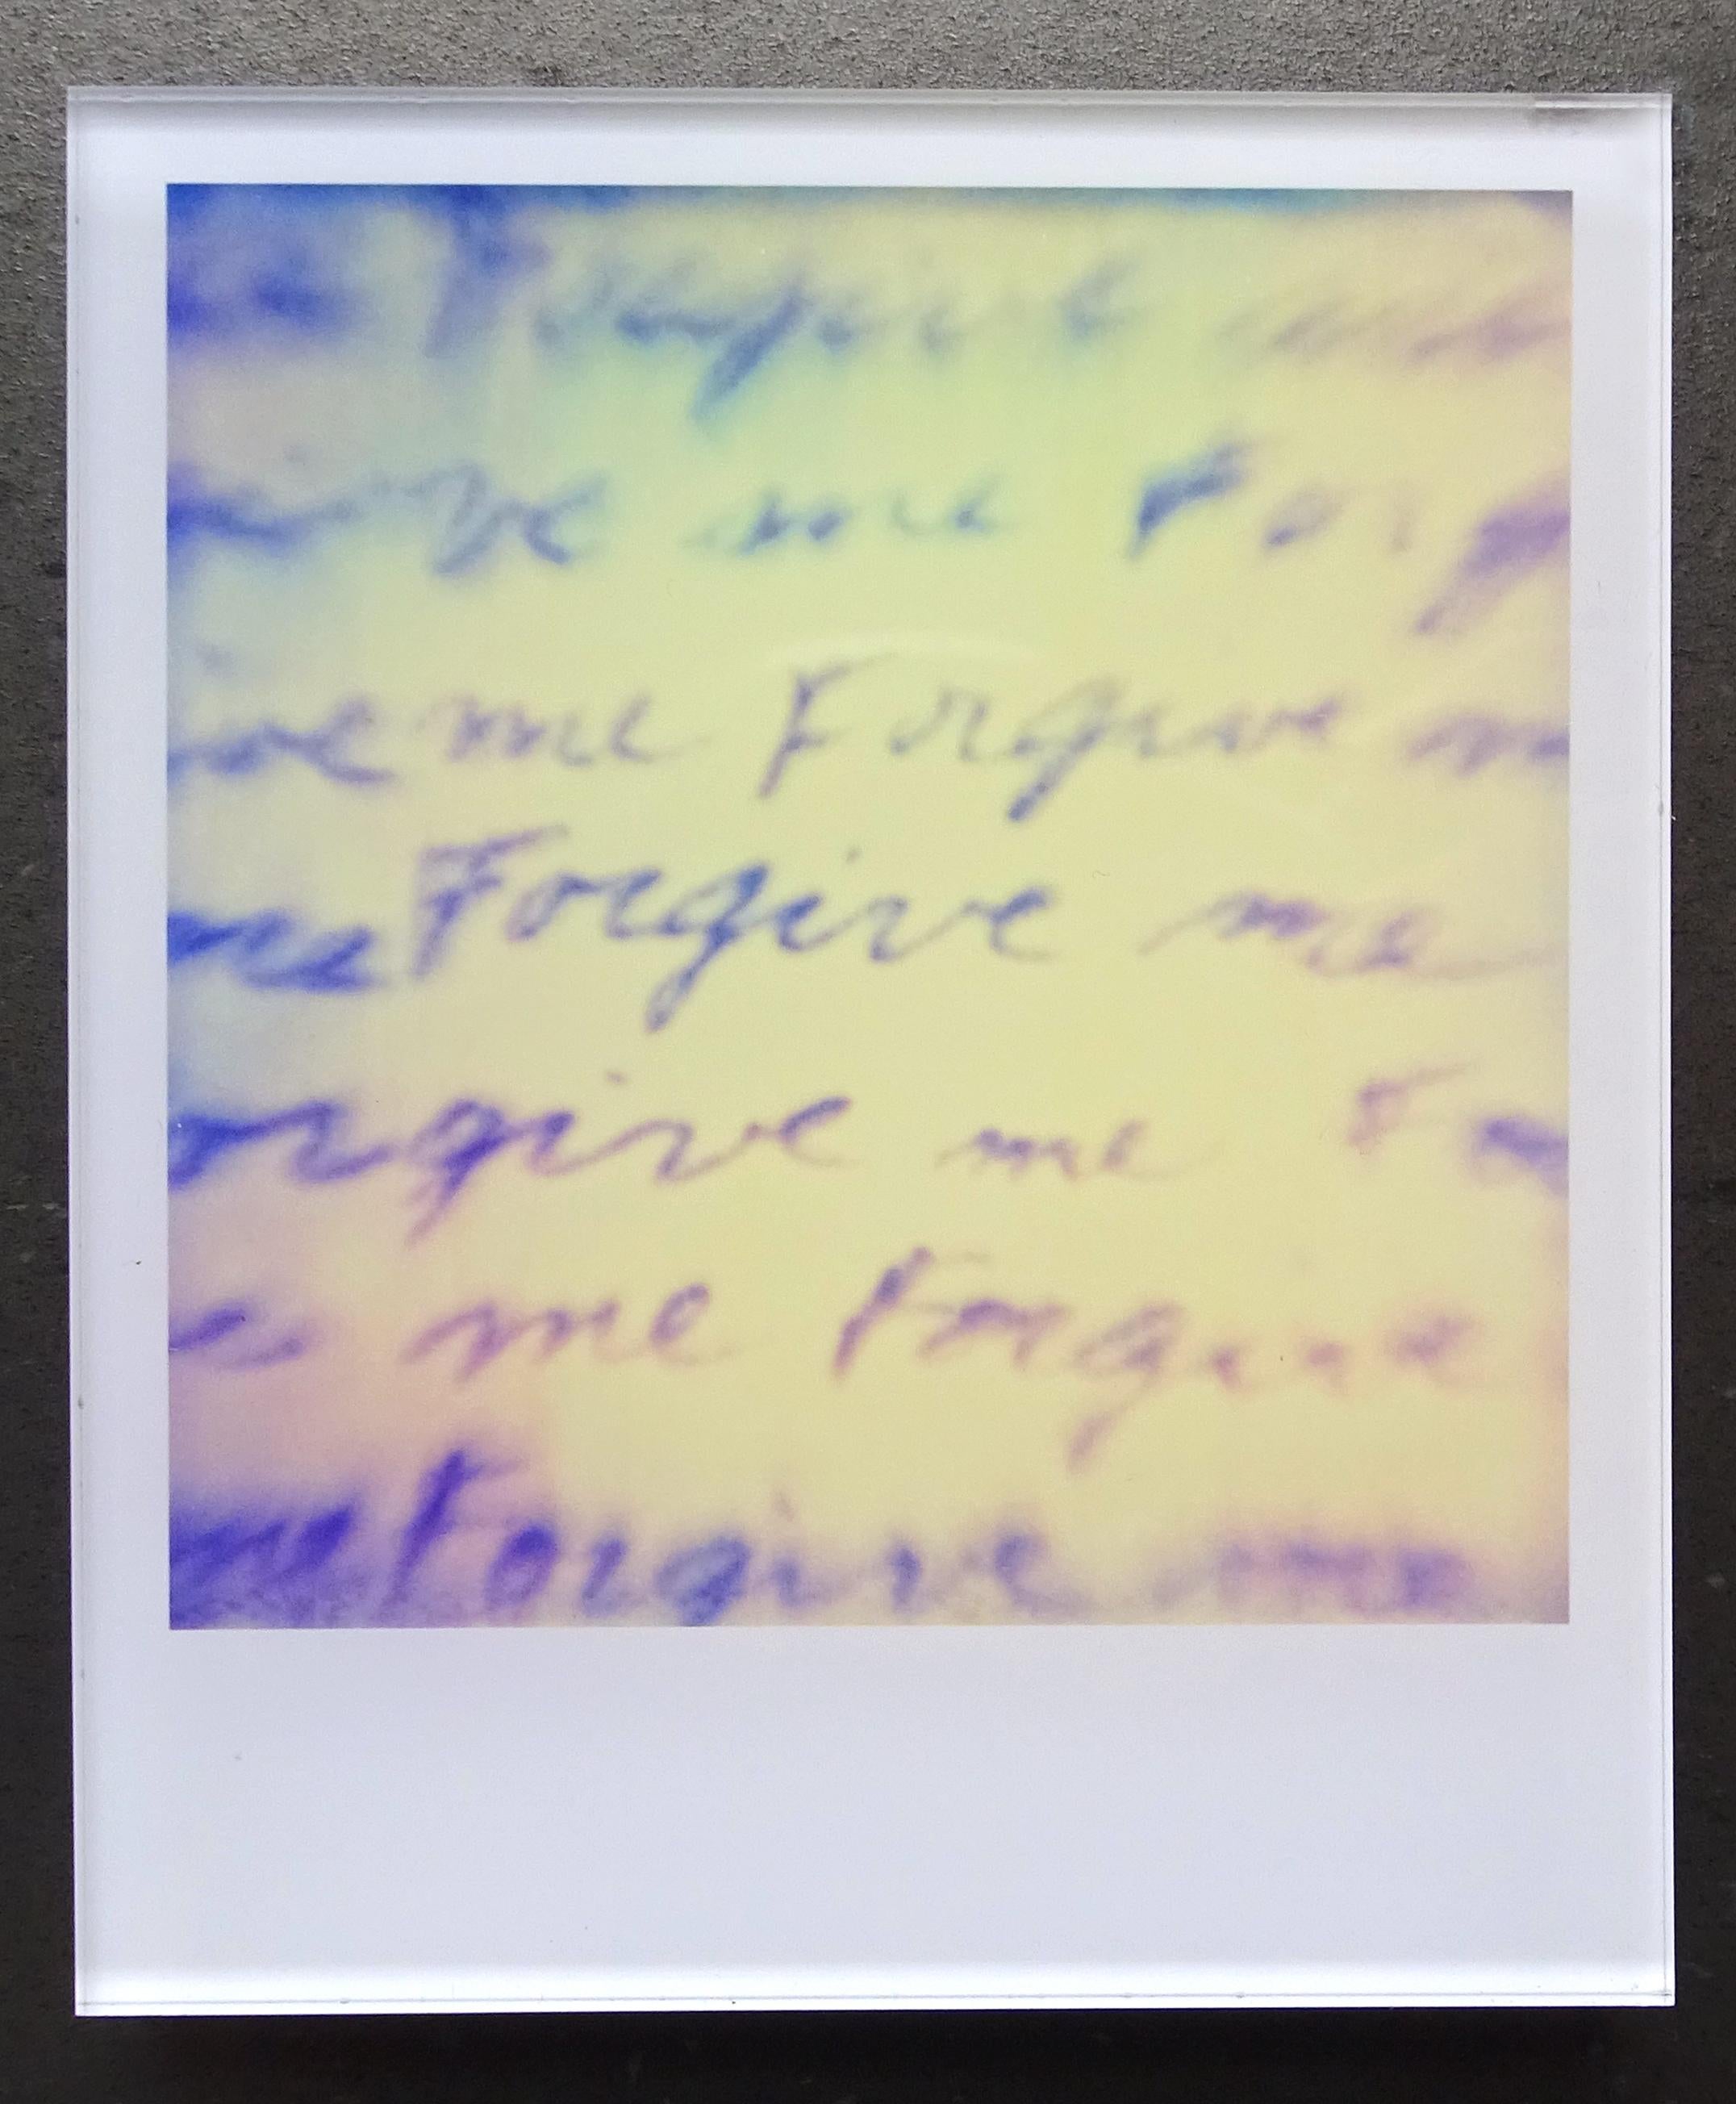 Die Minis von Stefanie Schneider
Coney Island (Aufenthalt), 2006

Verso signiert und Signaturmarke.
Digitale Lambda-Farbfotografien auf der Grundlage eines Polaroids.
Eingeklemmt zwischen Plexiglas (Dicke 0,7 cm)

aus dem Film 'Stay' von Marc